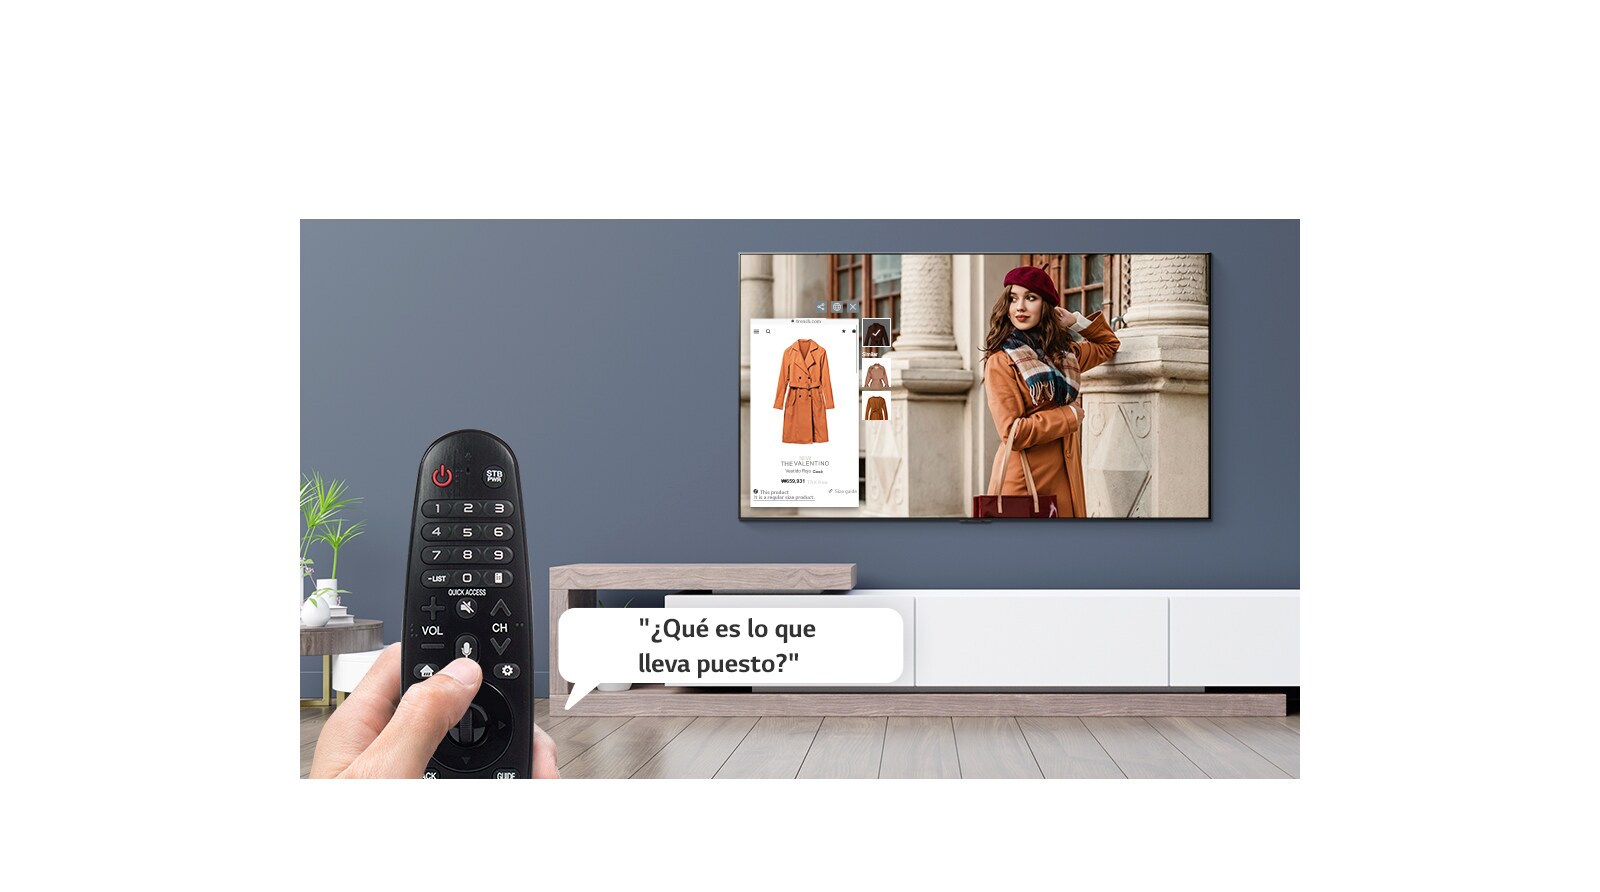 Primer plano de una mano controlando la televisión con un control remoto para preguntar qué lleva puesto una mujer en la televisión.